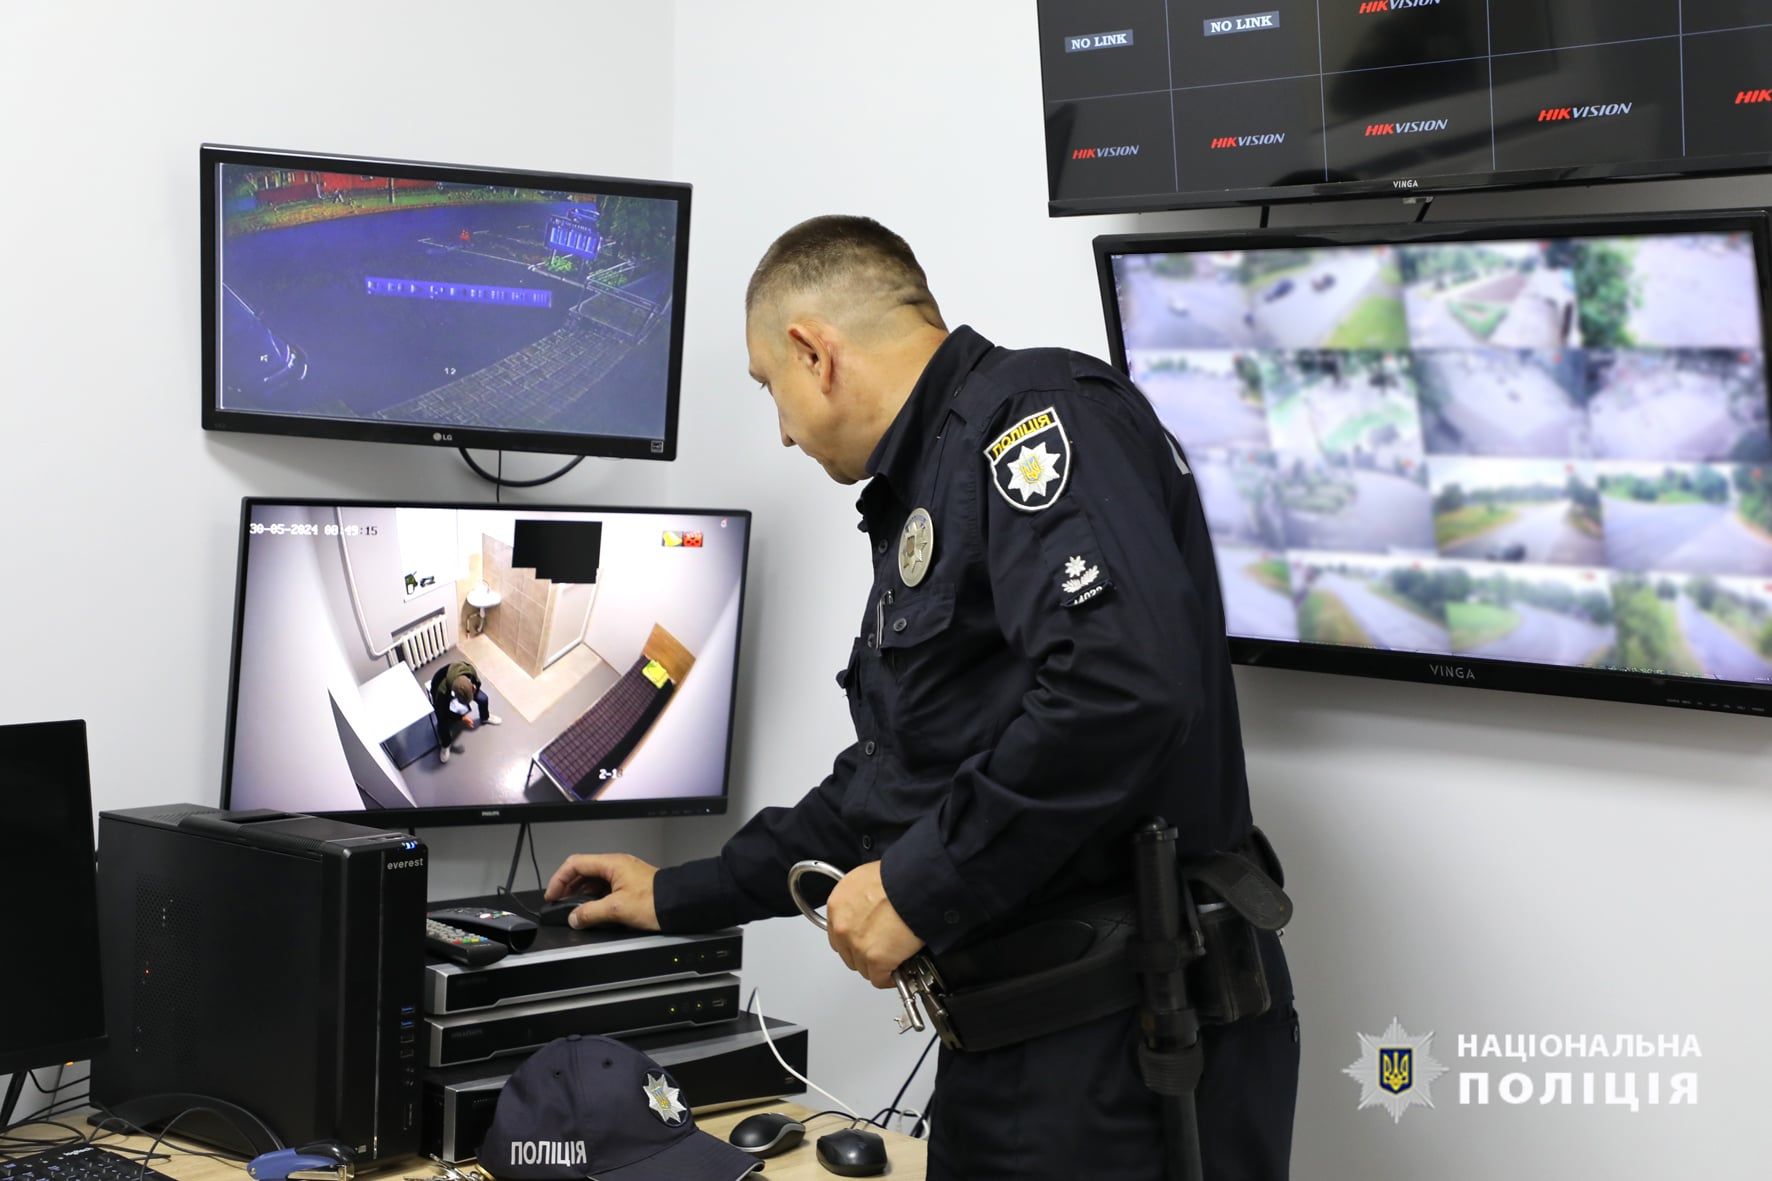 Сучасна система контролю за дотриманням прав людини в поліцейській діяльності, яка запрацювала на Черкащині, відповідає європейським стандартам.